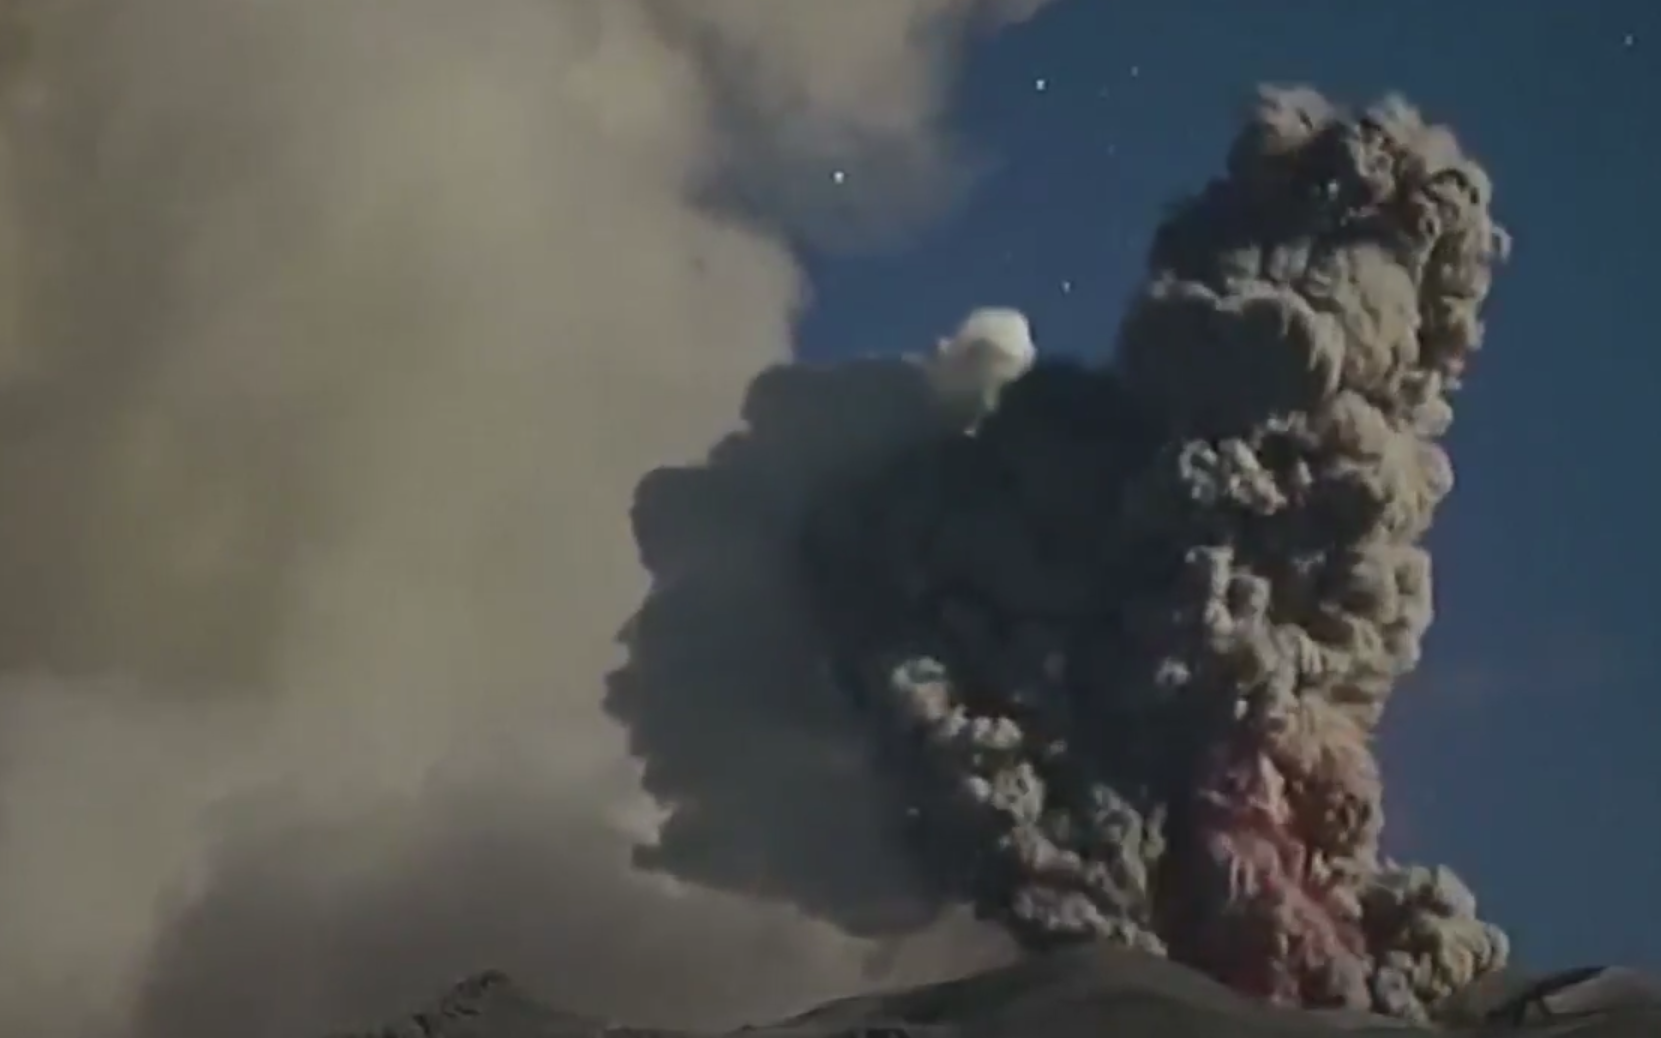 Le volcan a craché des cendres jusqu'à 3 km au-dessus du cratère.